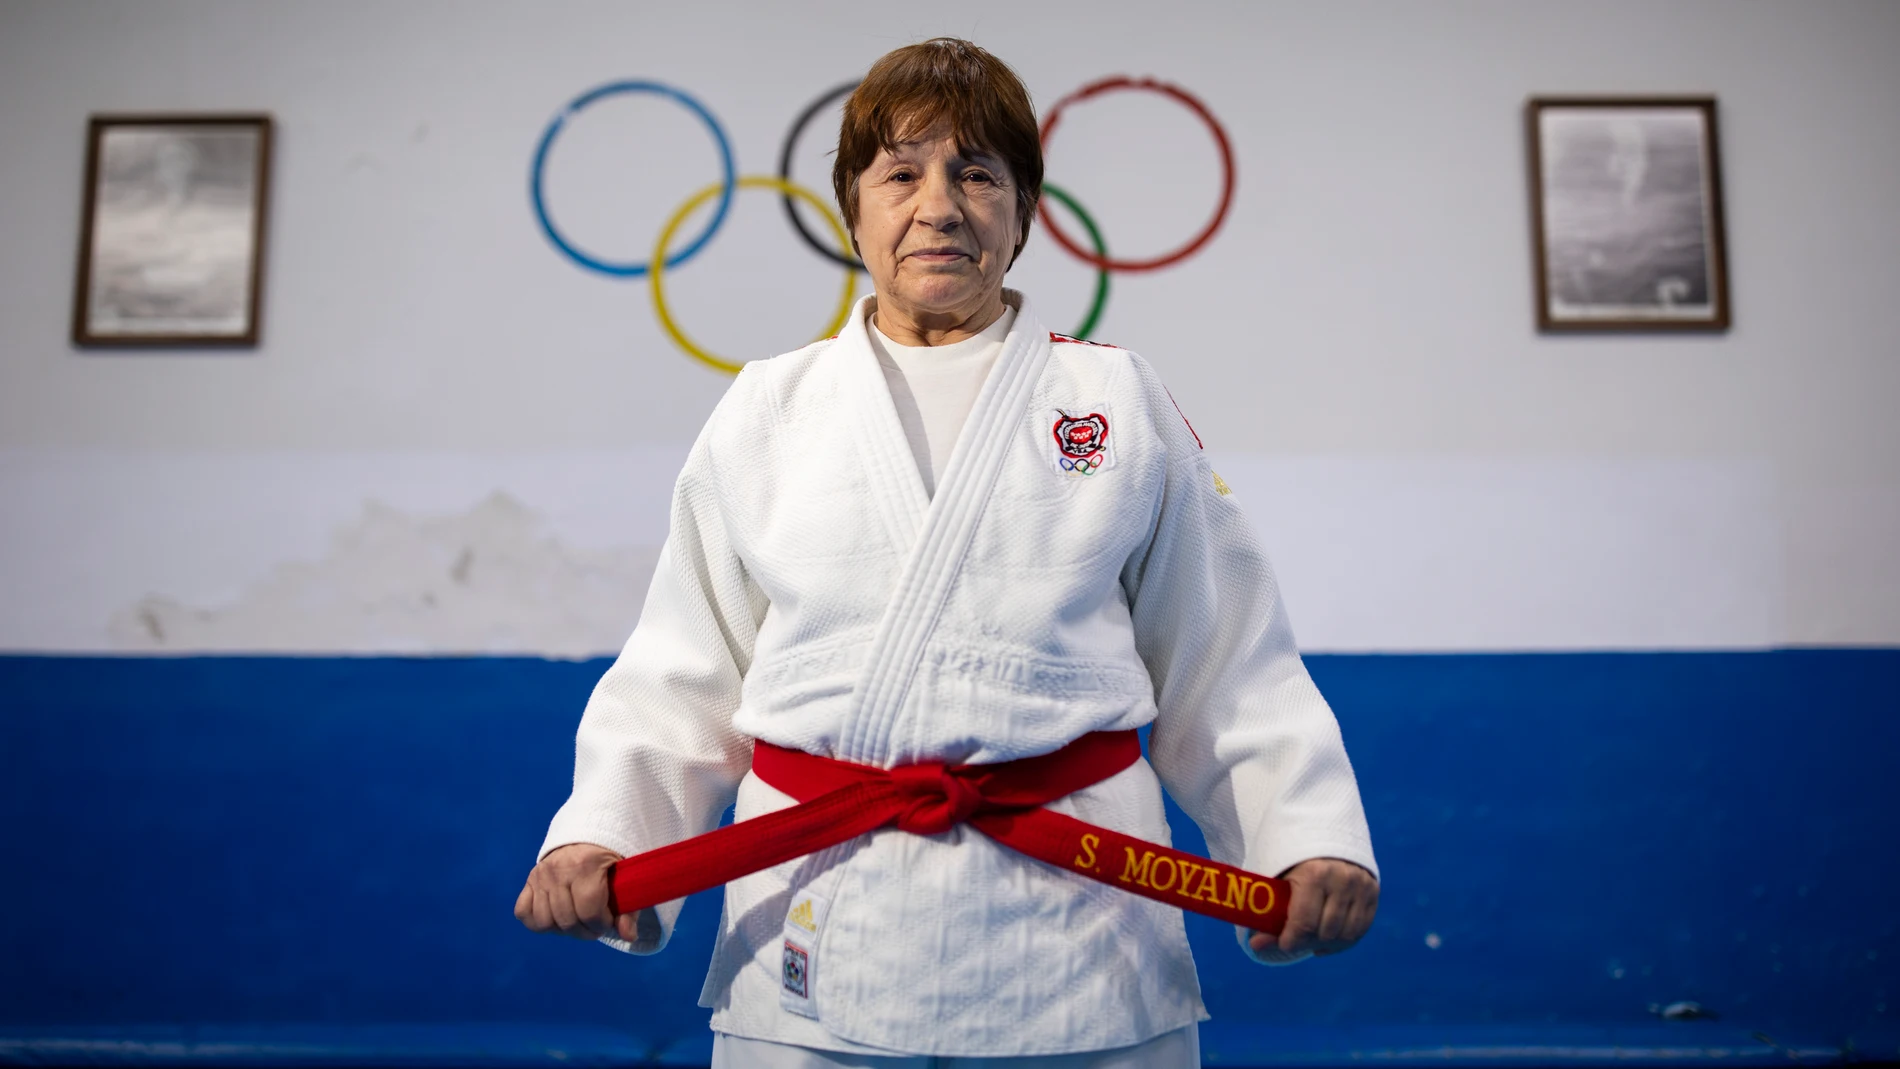 Entrevista a la Judoka Sacramento Moyano de 71 años que actualmente es cinturón negro 9 dan.© Jesús G. Feria.